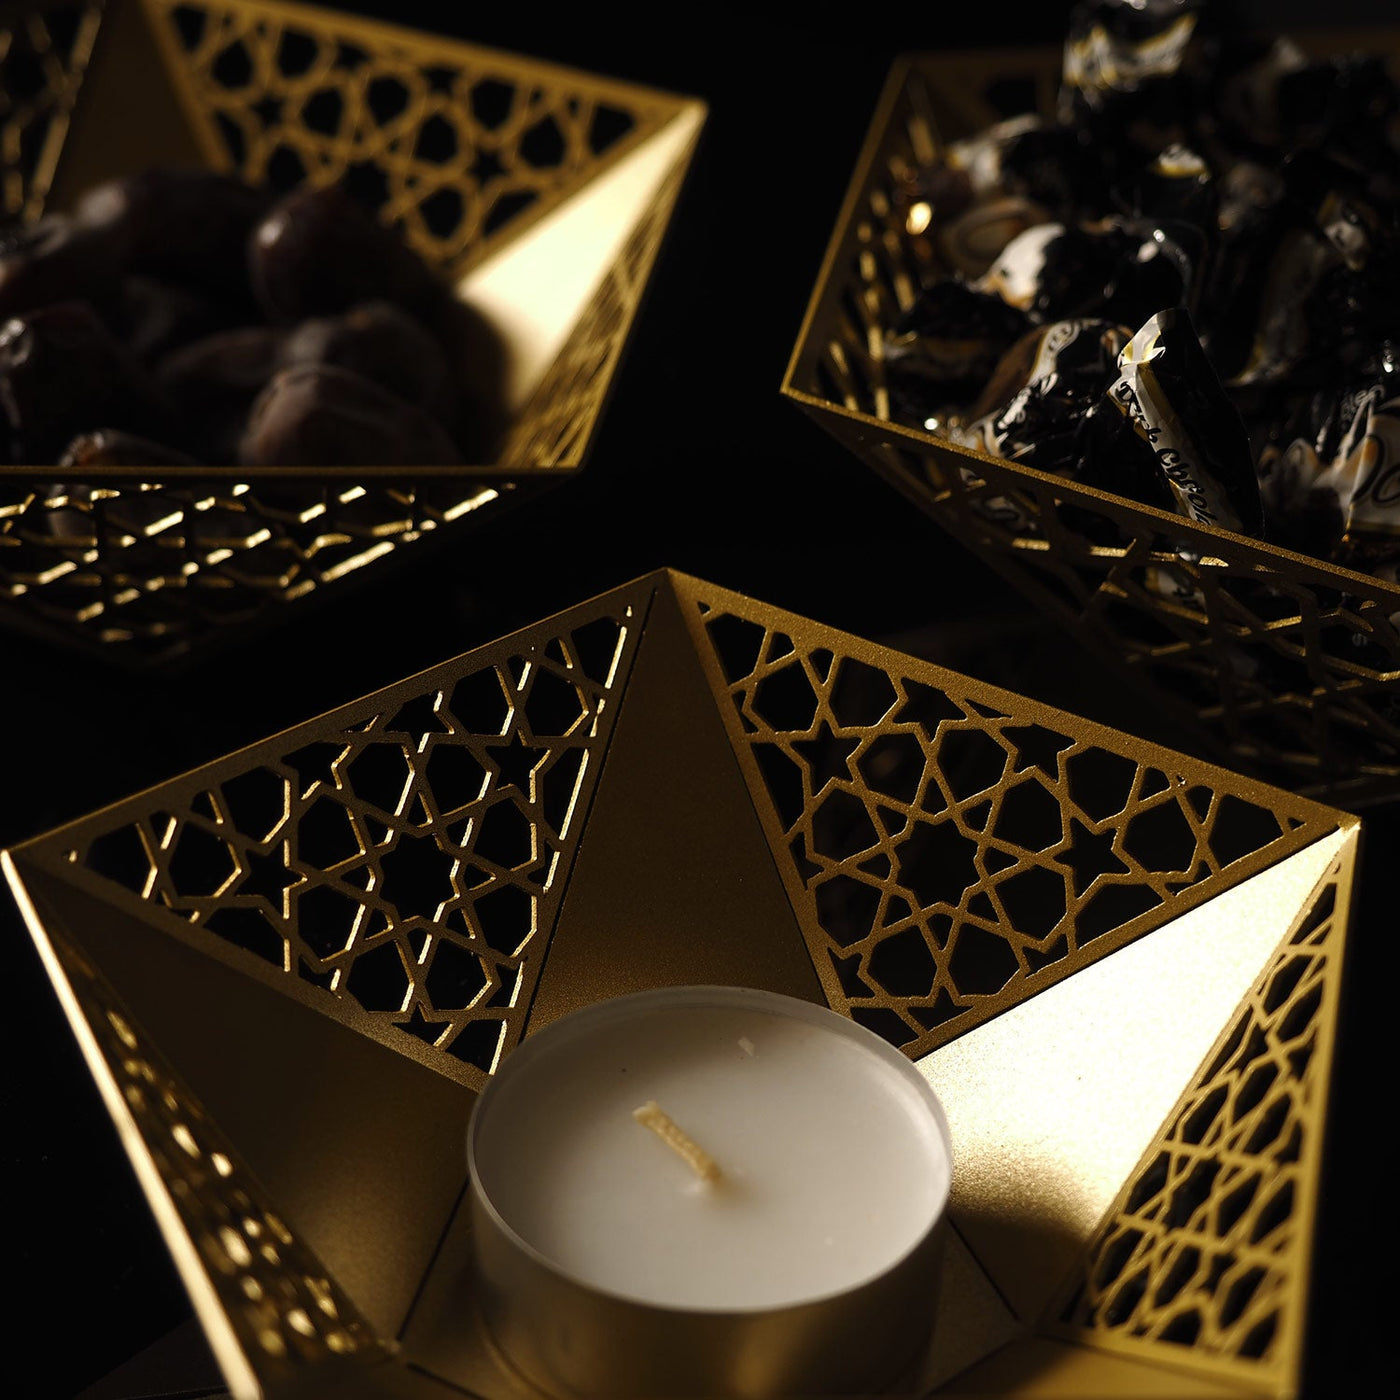 طقم اواني 3 قطع يمكنكم استخدامها في رمضان وغير رمضان من المعدن - WAMH123